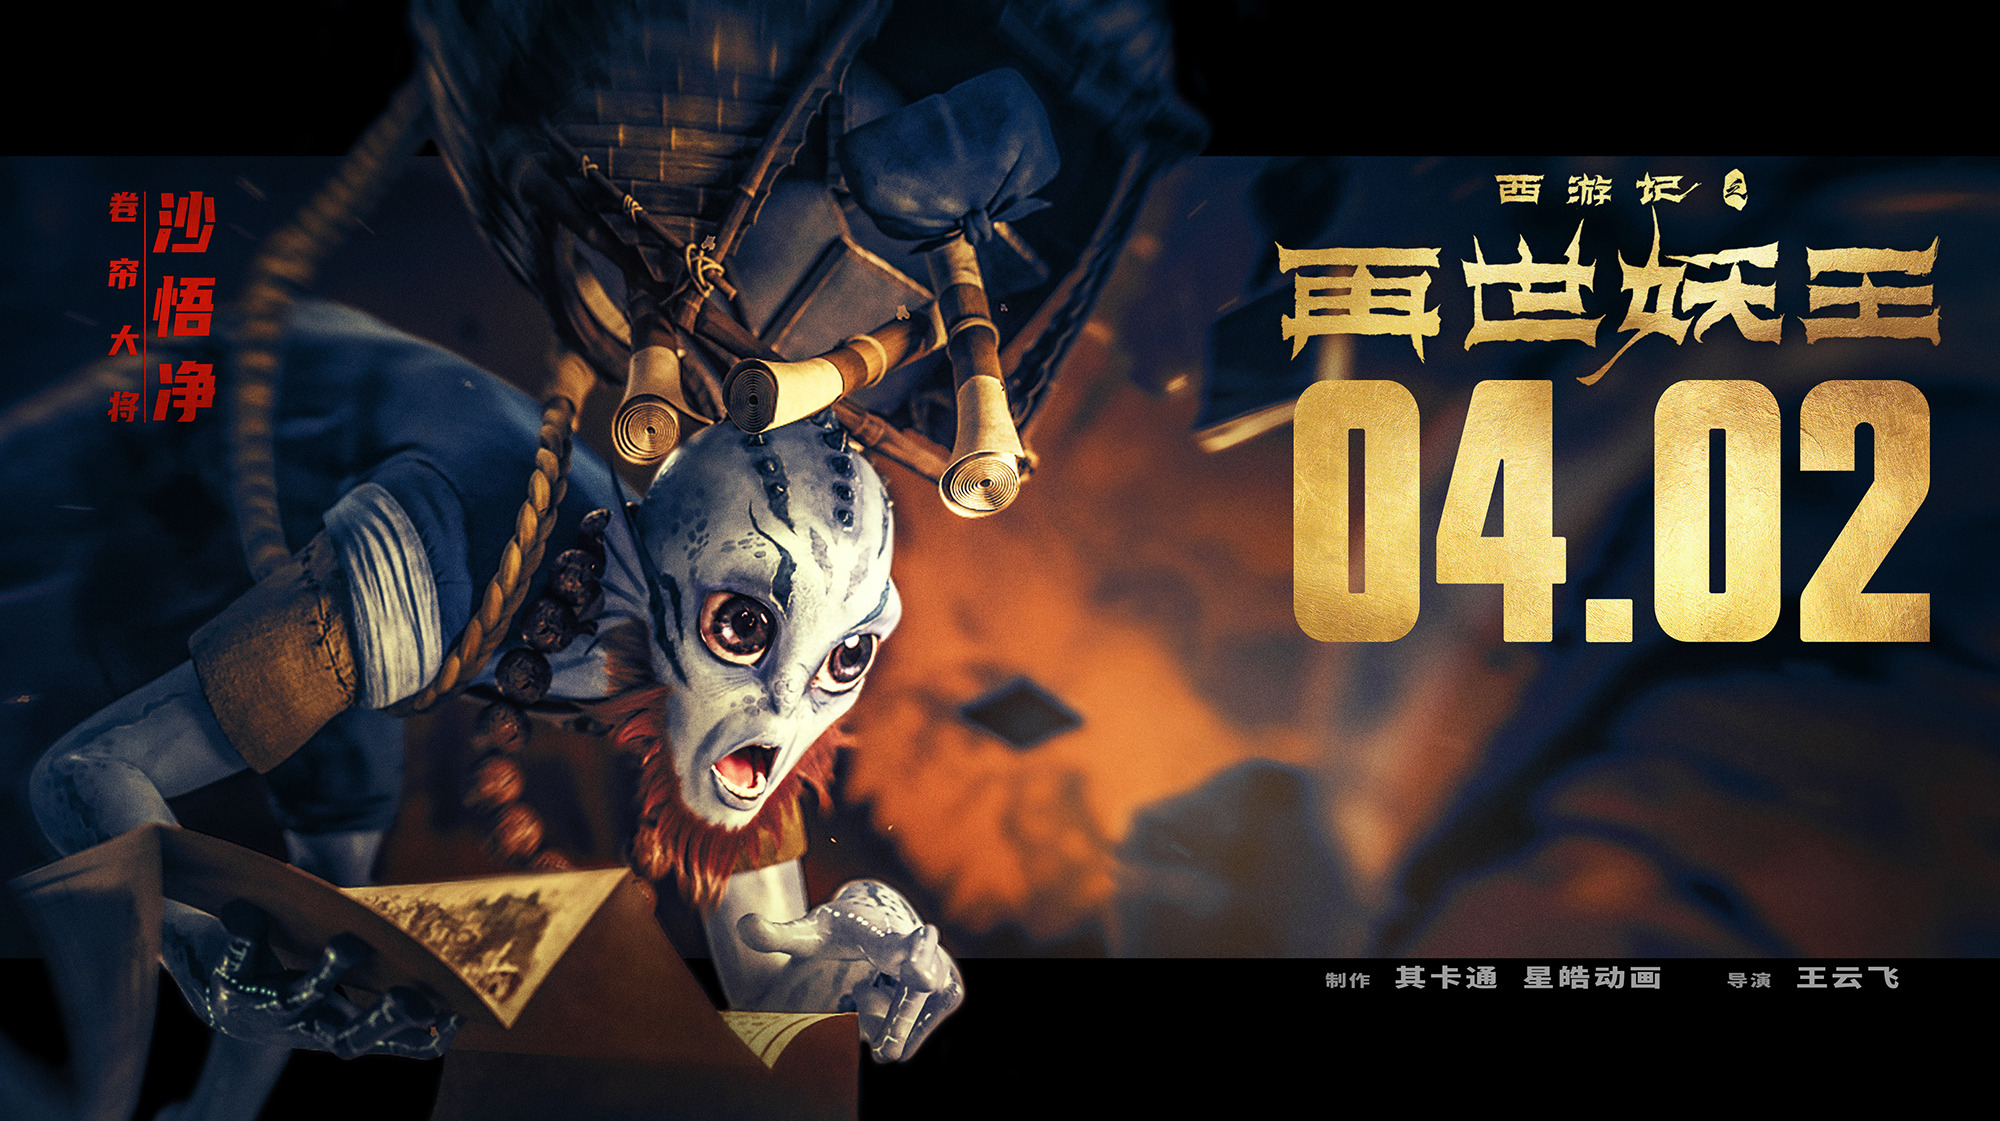 Mega Sized Movie Poster Image for Xi You Ji Zhi Zai Shi Yao Wang (#13 of 21)